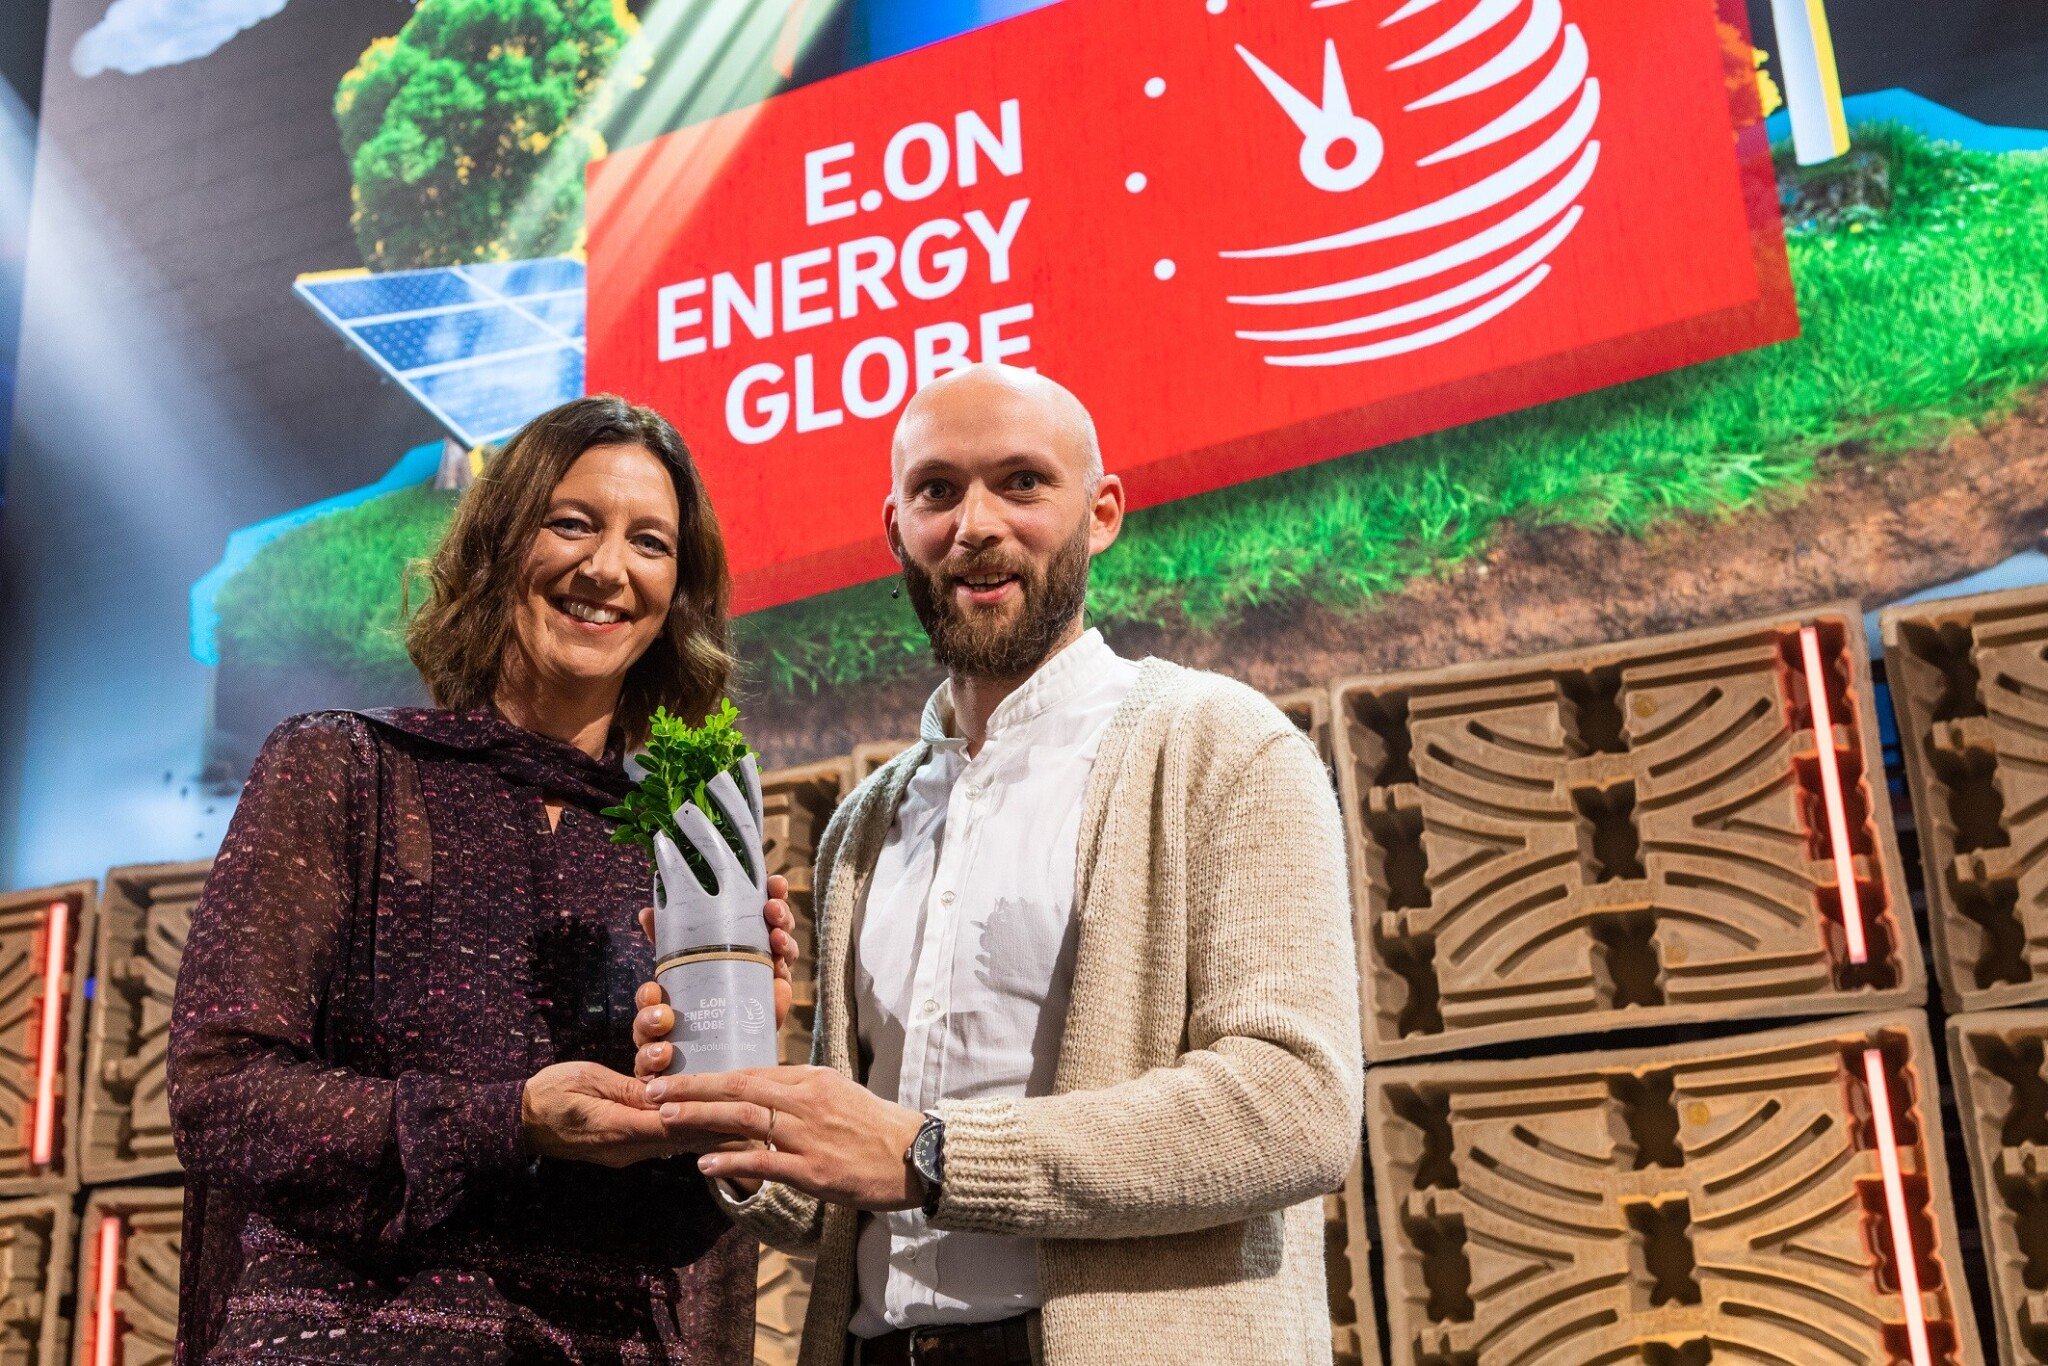 Houby místo plastu. Český startup Myco uspěl v ekologické soutěži Energy Globe World Award